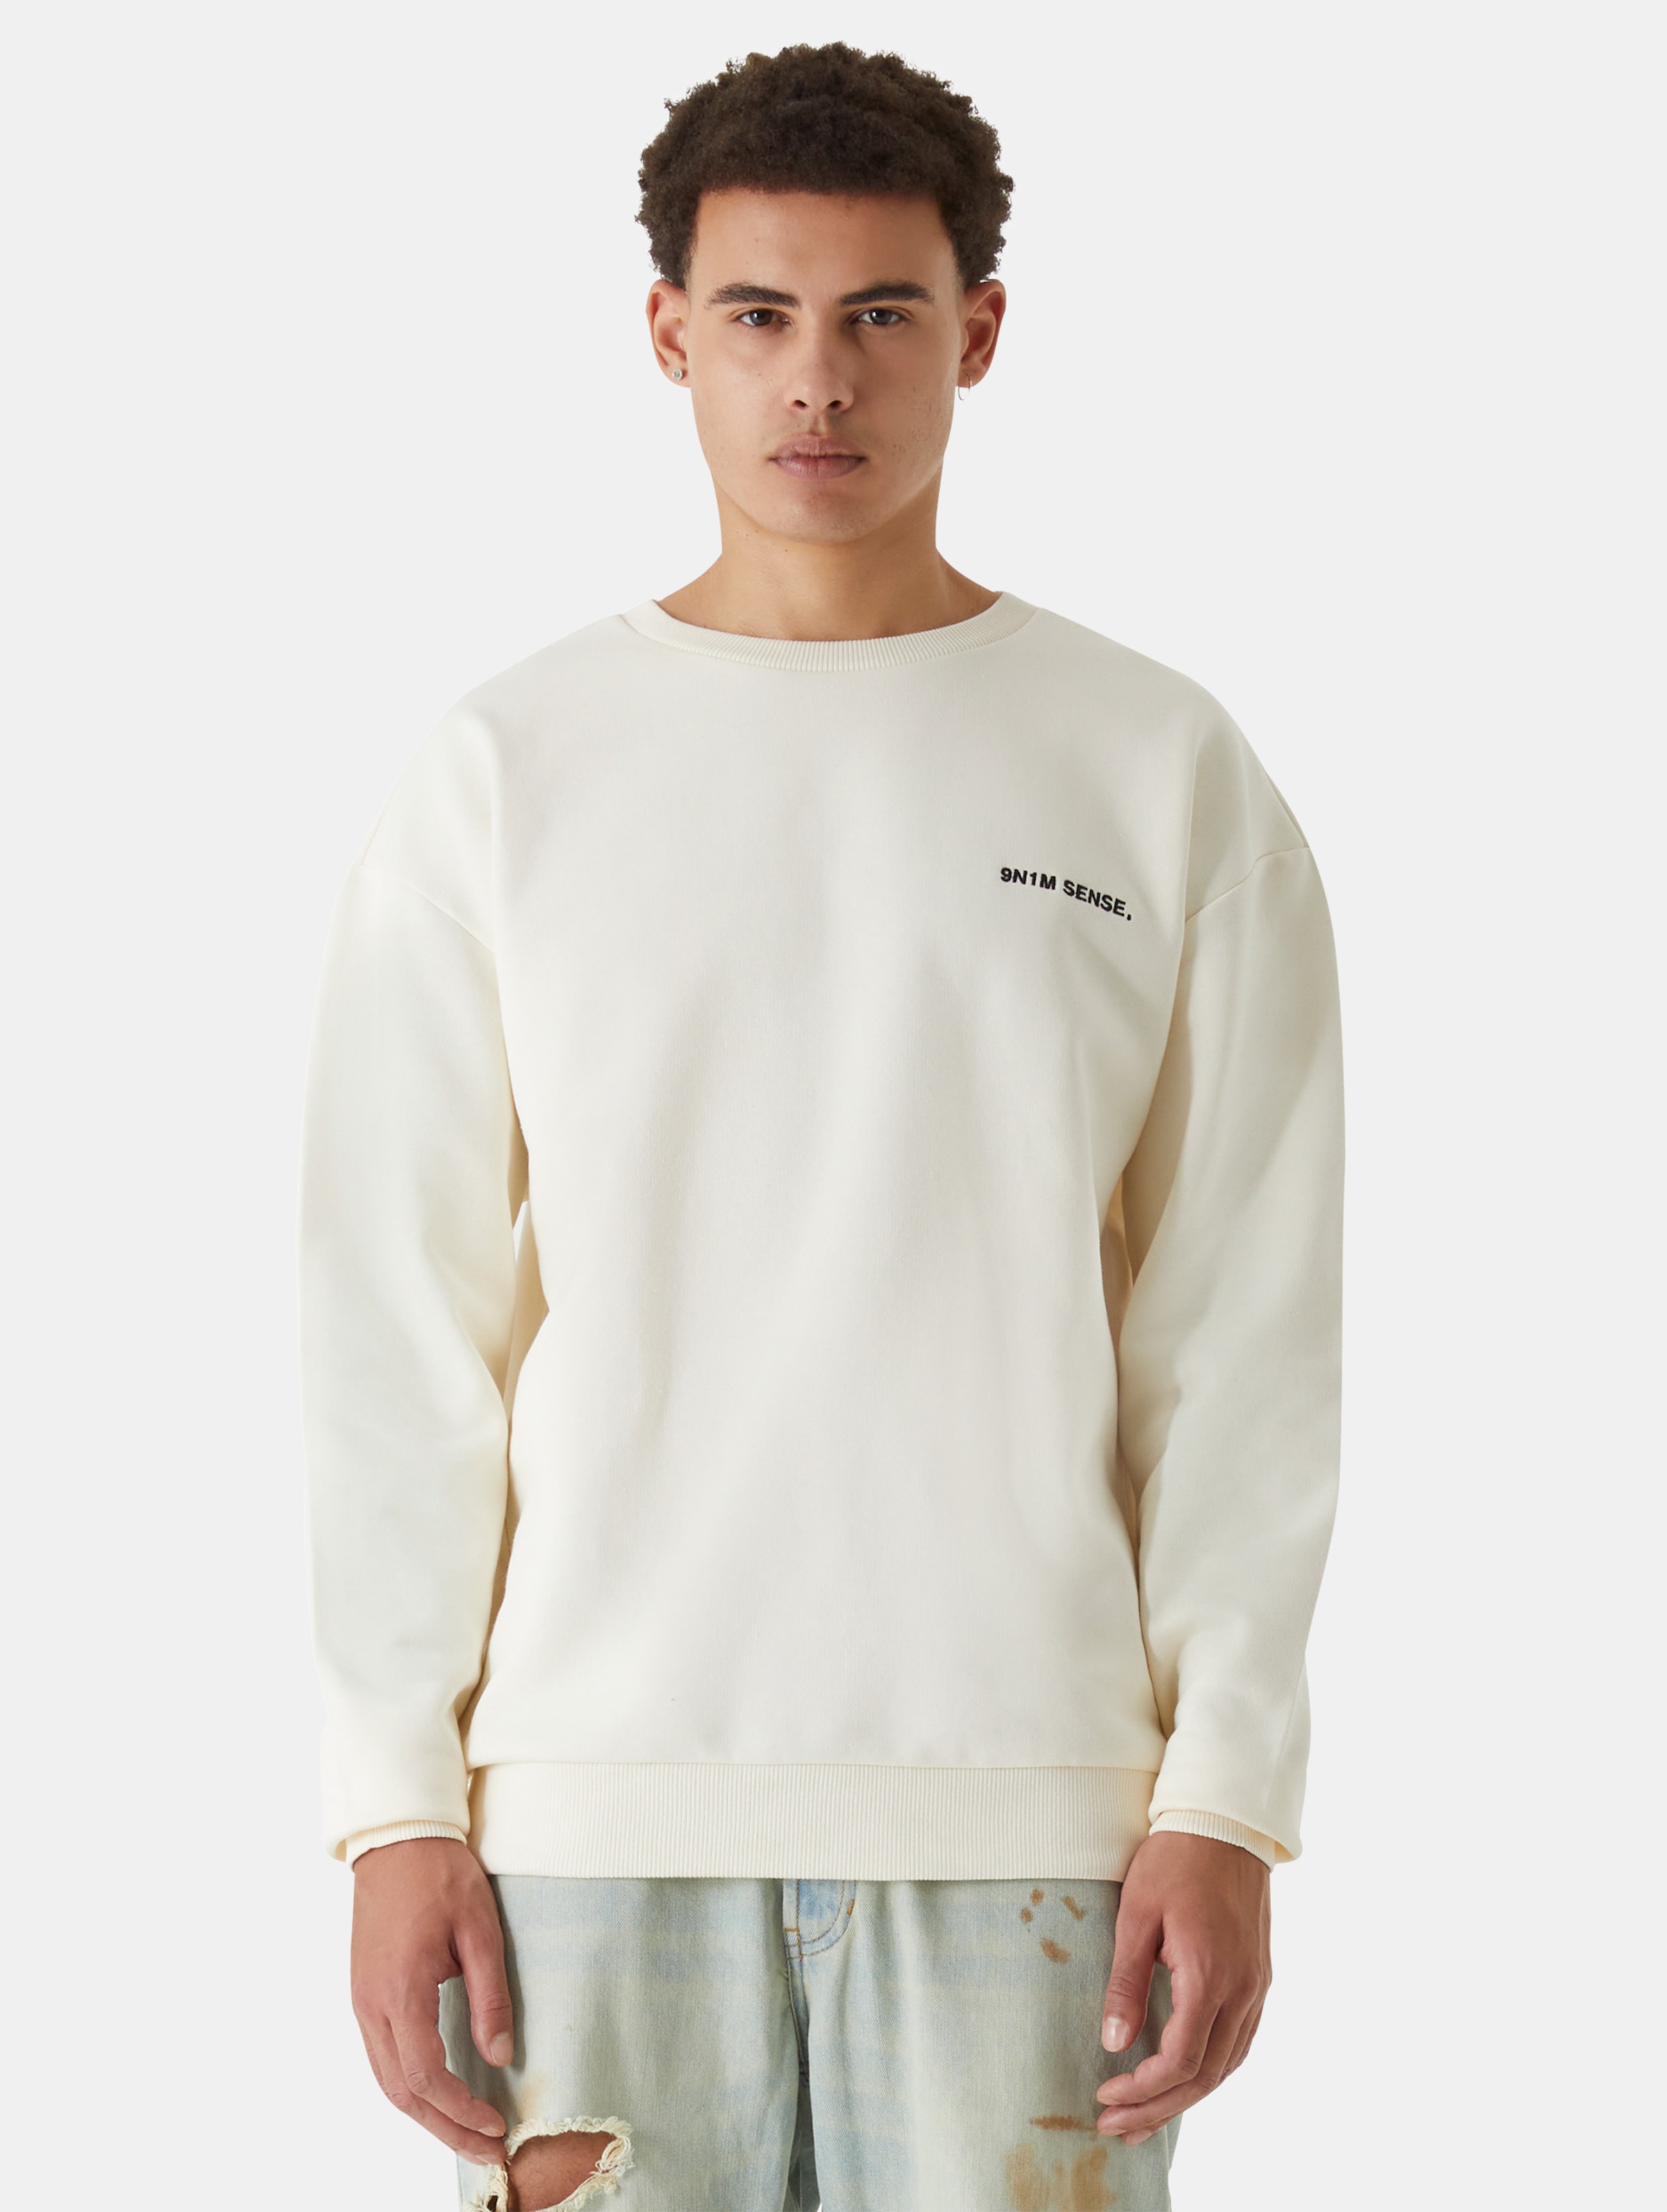 9N1M SENSE Essential Sweatshirt Männer,Unisex op kleur beige, Maat S